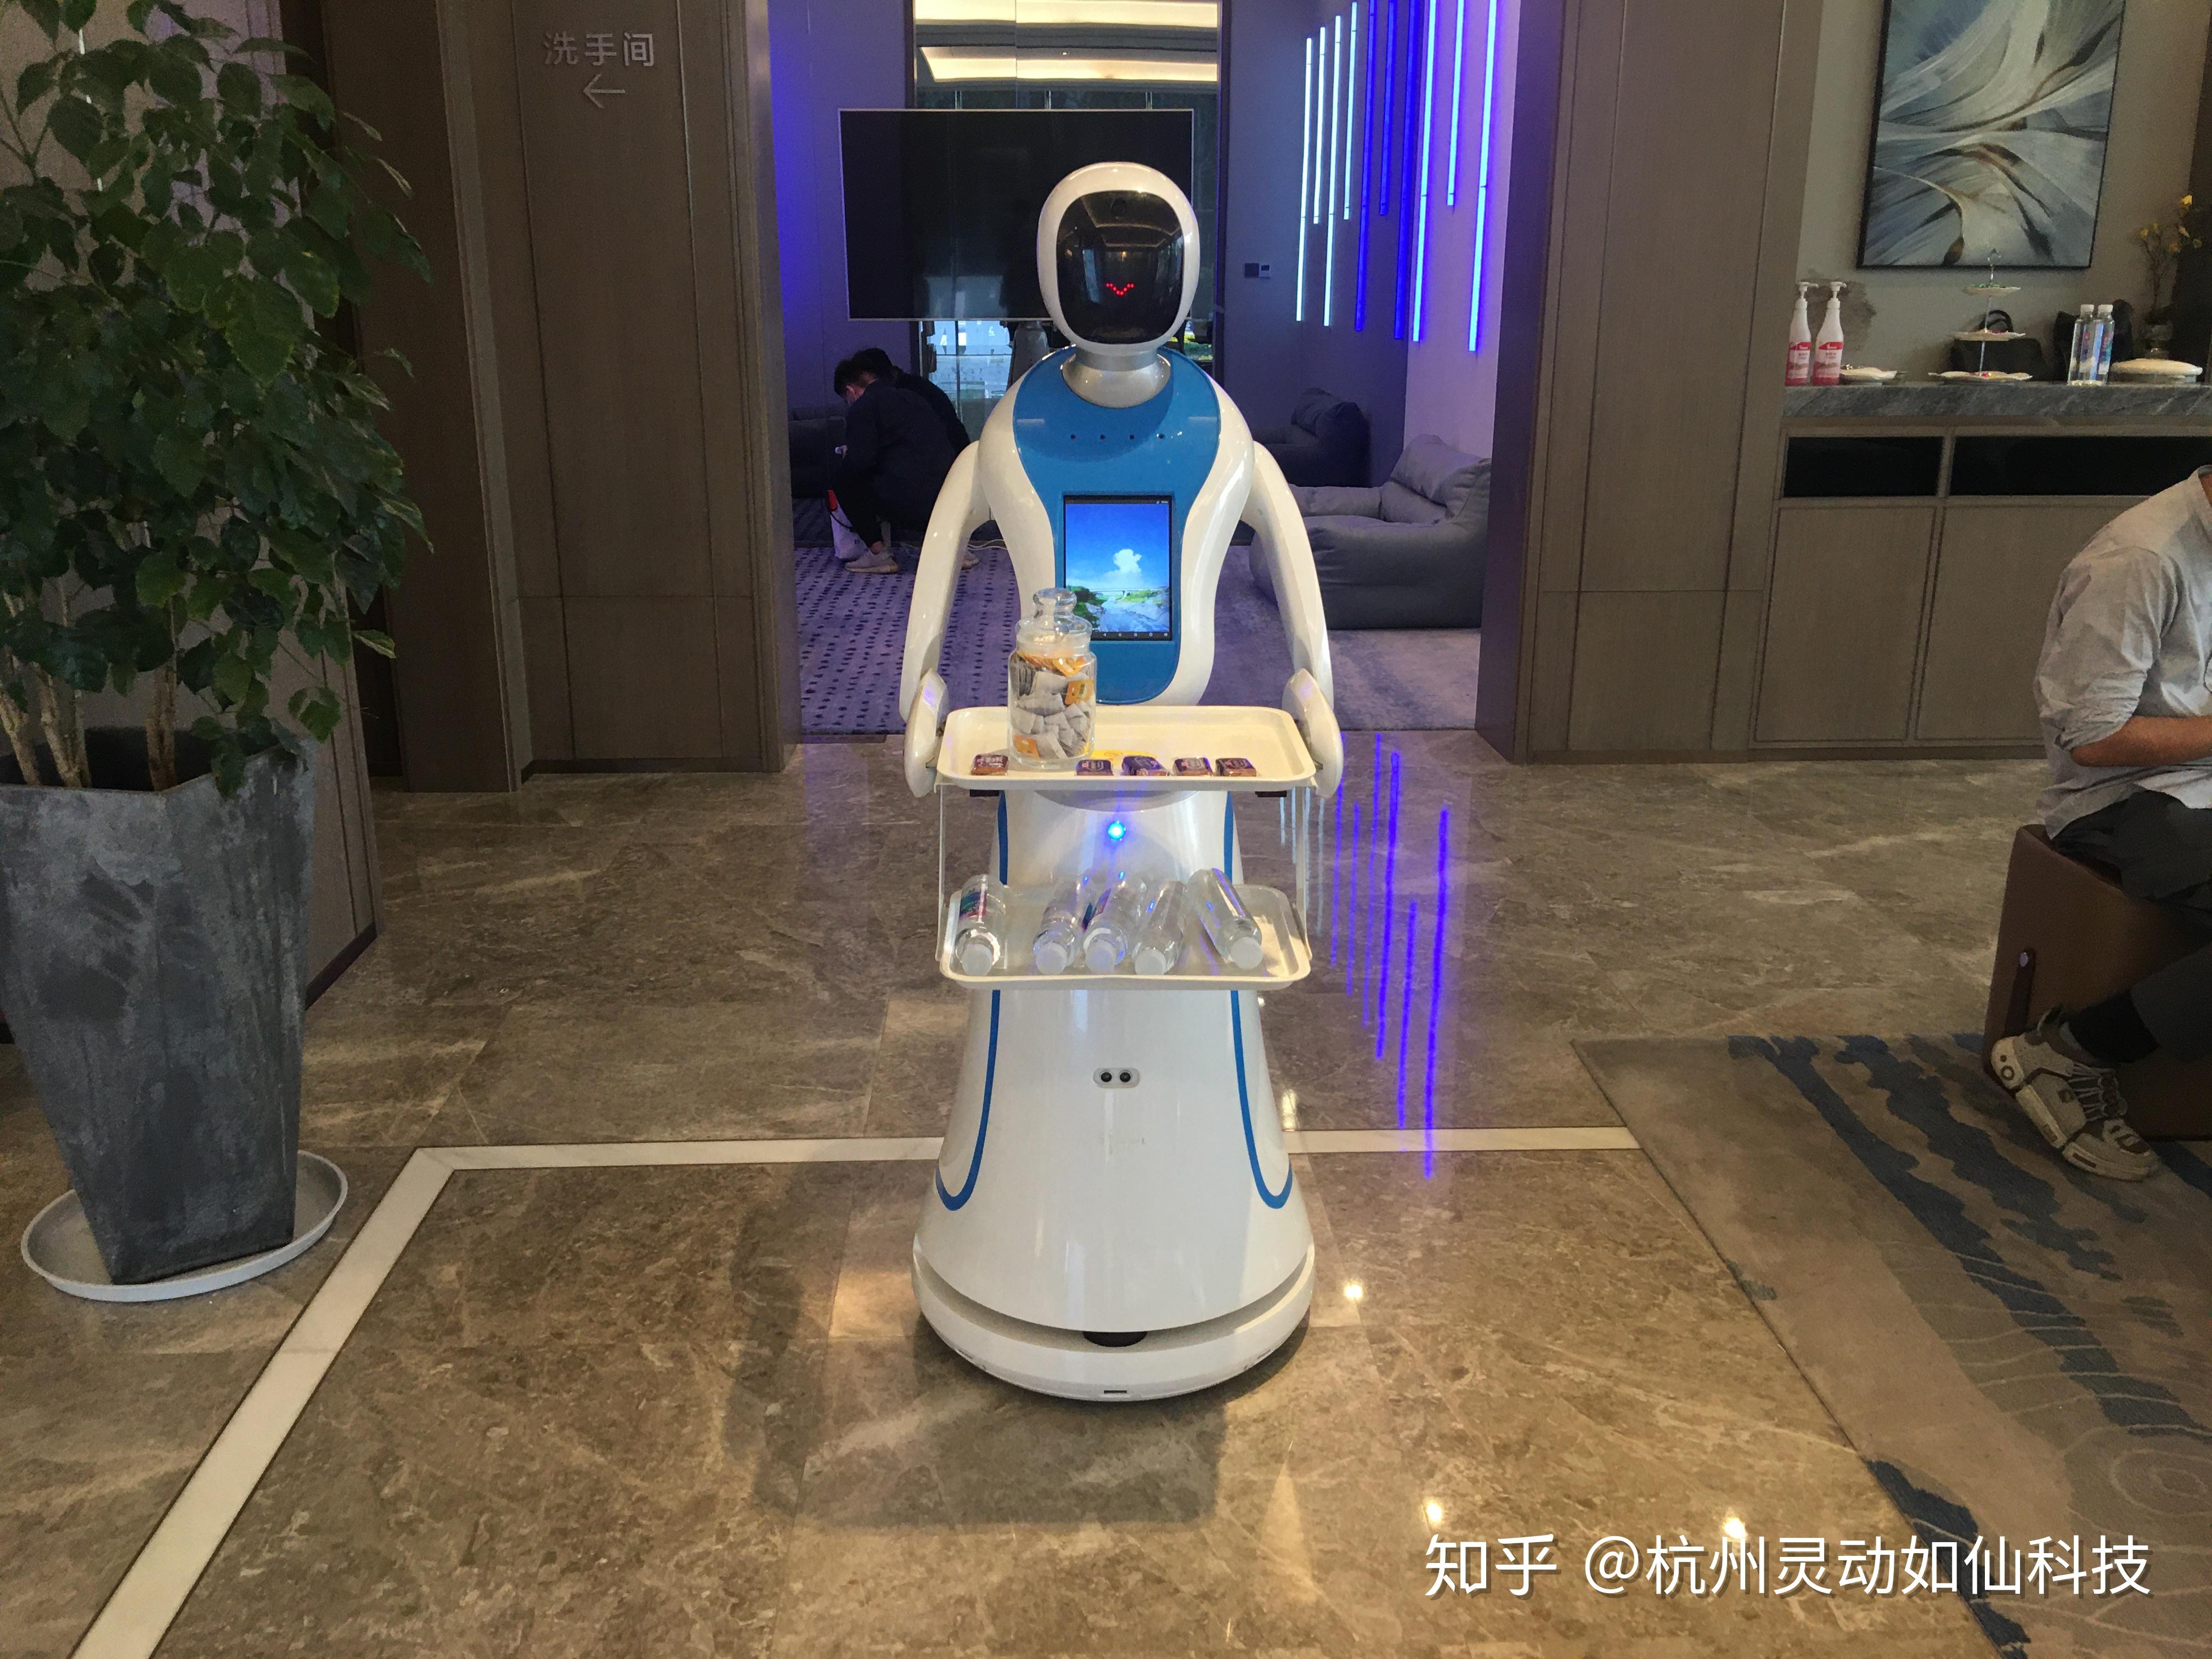 山东曲阜刘一手火锅店餐饮餐厅送餐机器人-智能制造网